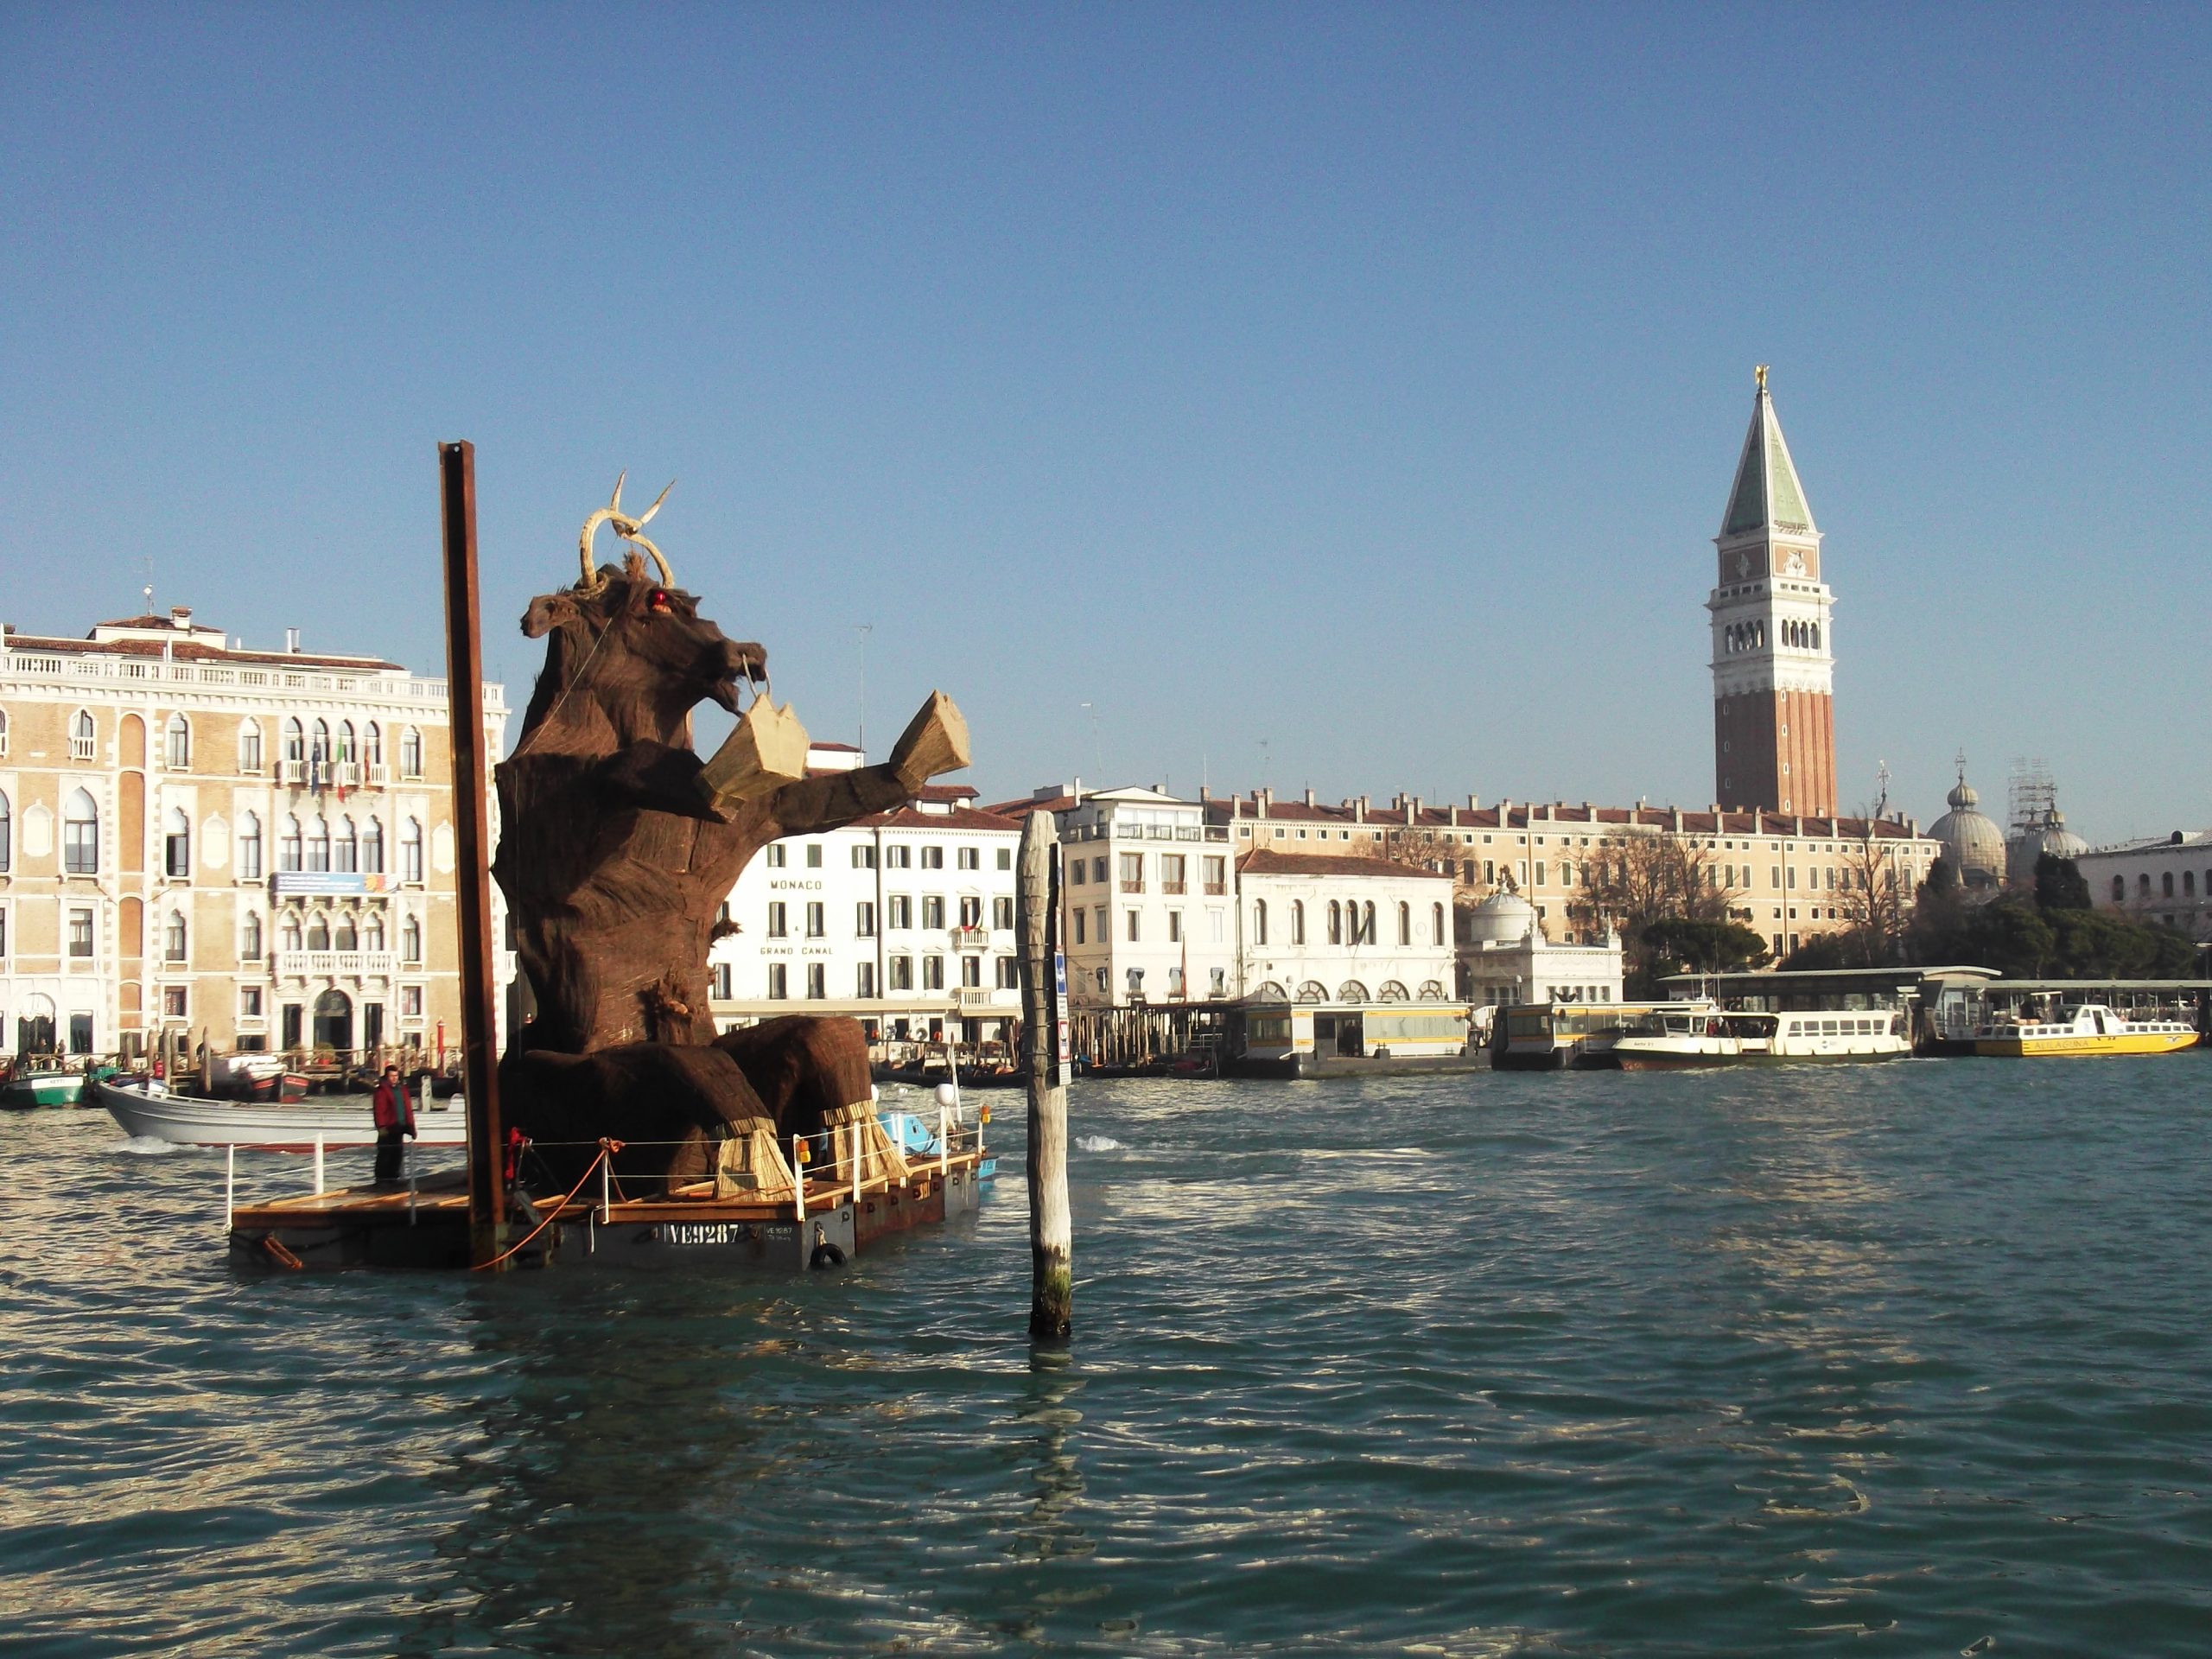 Venice, Punta della Dogana, 2012. Fire sculpture created by Guerrino Lovato’s team for the Venice Carnival called the ‘Colossal Bull’. Digitized for Mondonovo Maschere